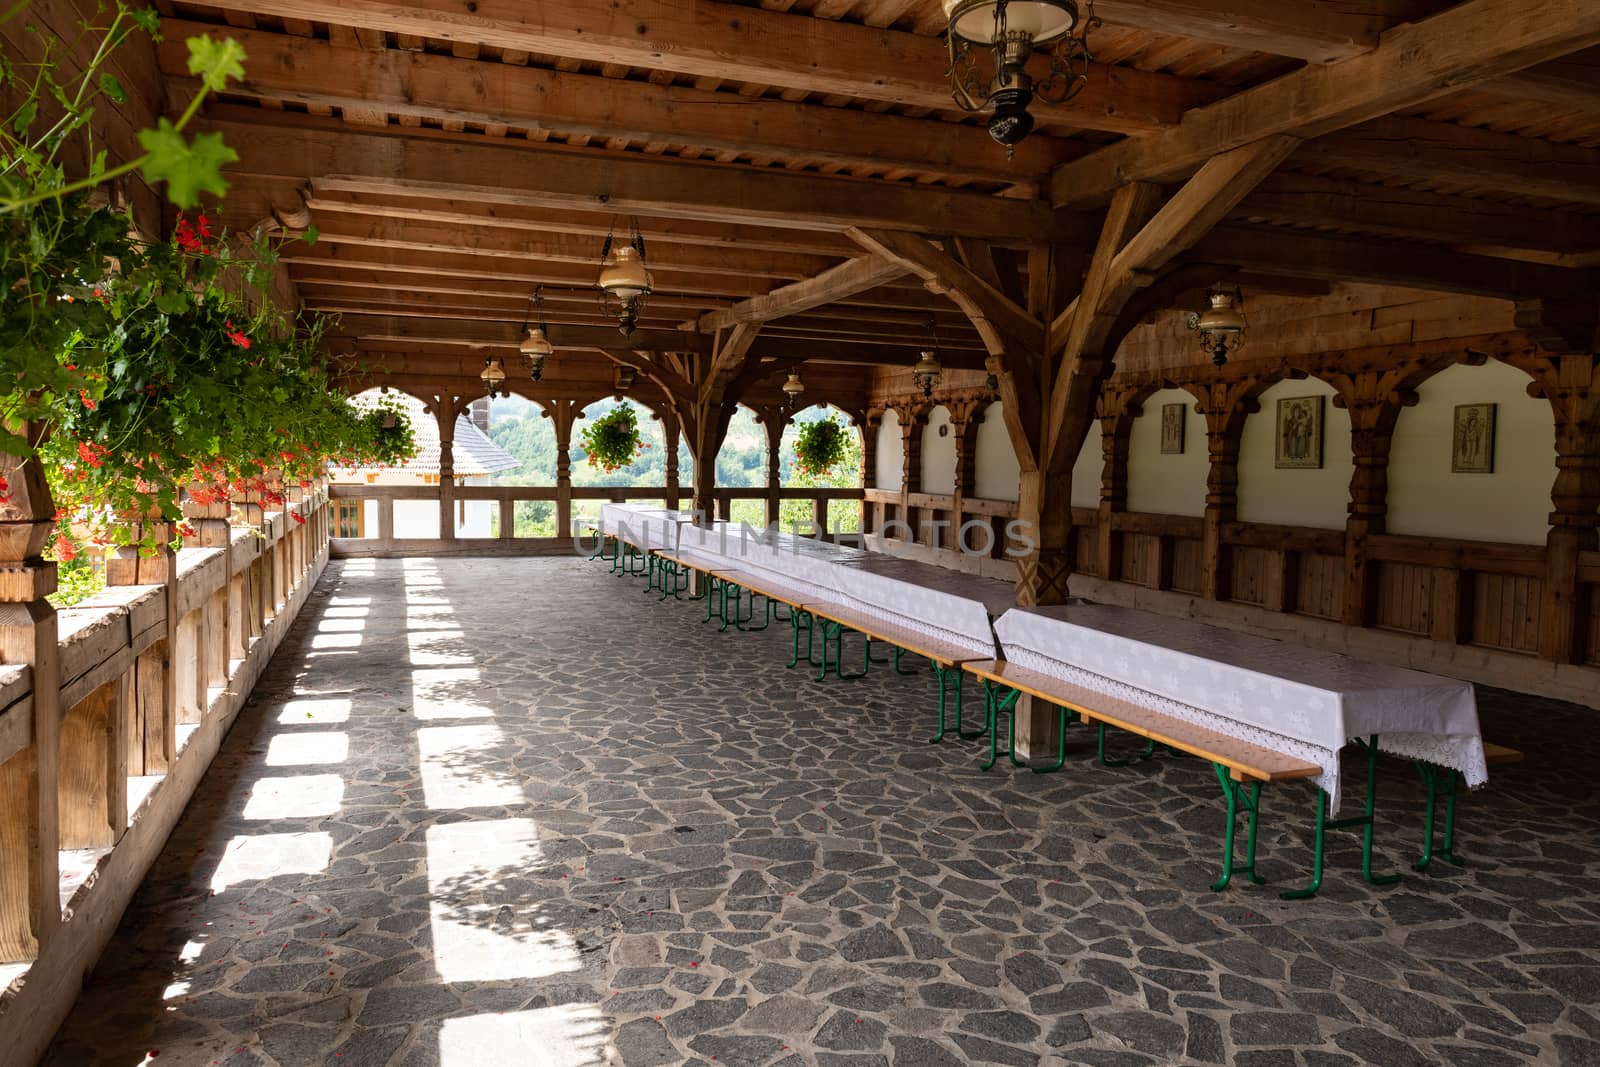 Barsana Monastery Architectural Detail - Dining Balcony (Maramures, Romania).